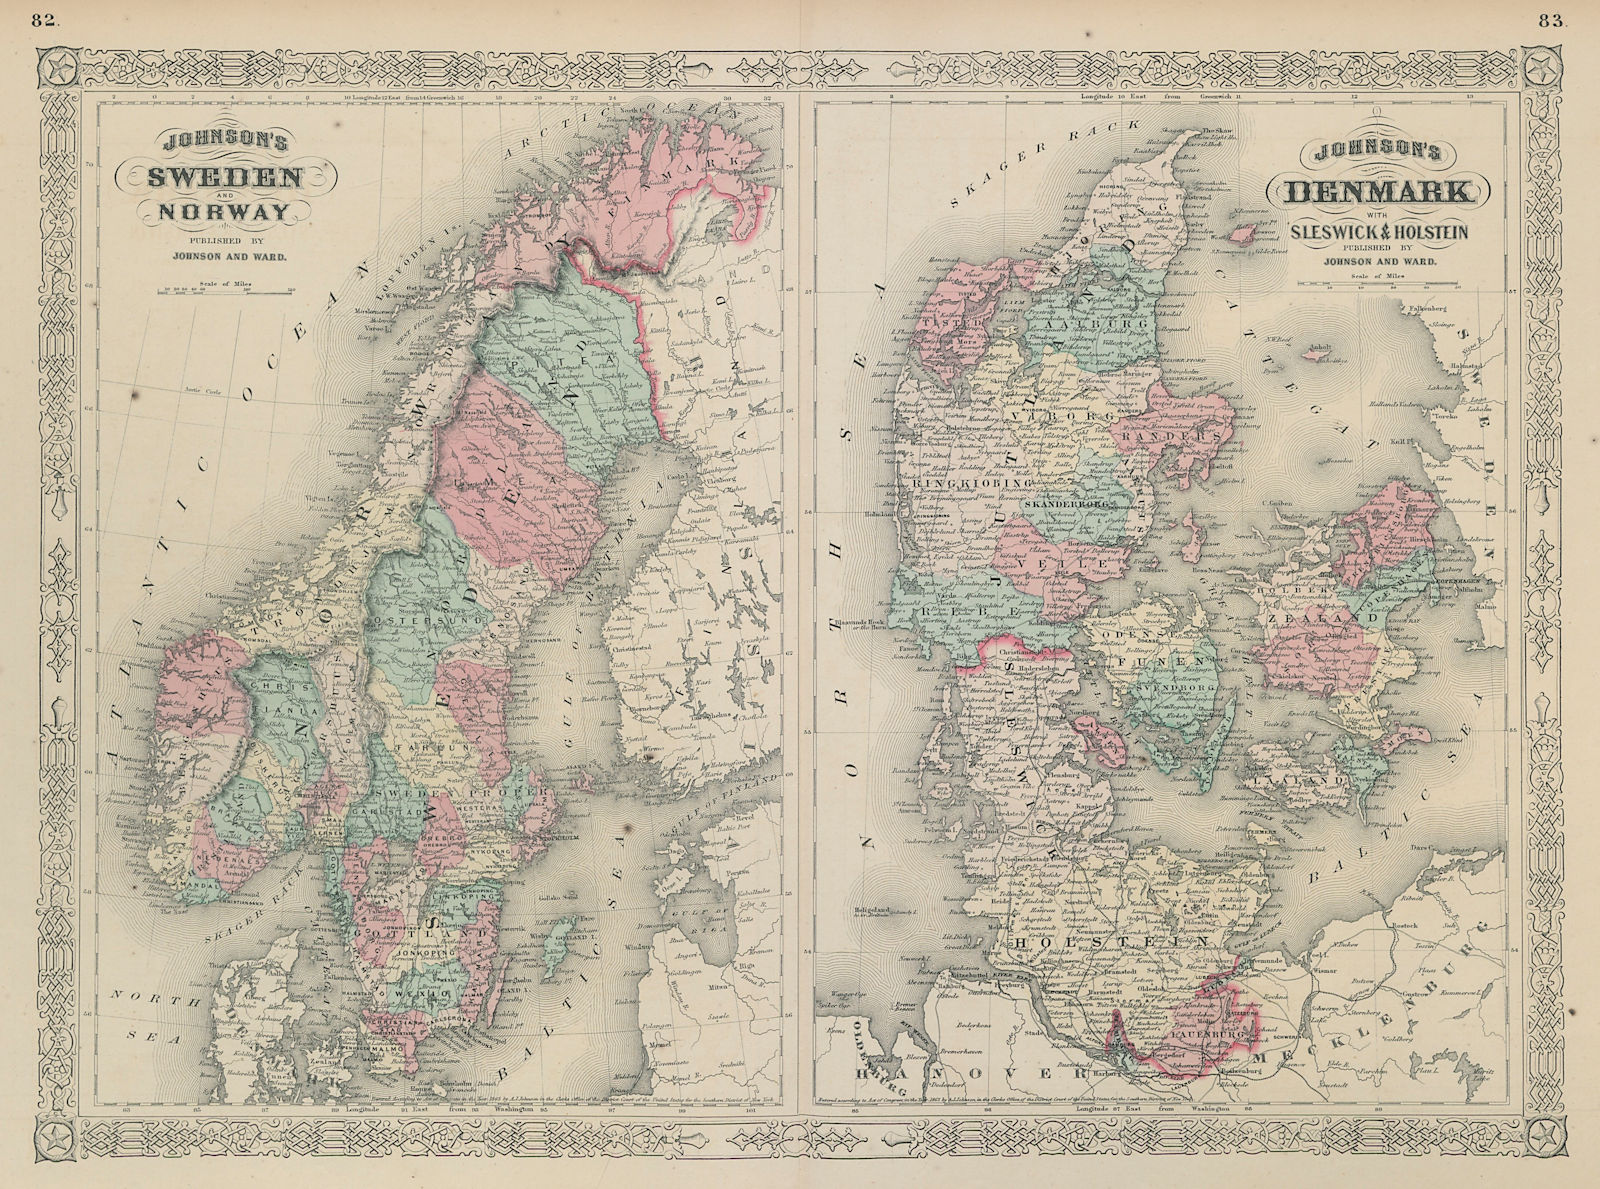 Johnson's Sweden, Norway & Denmark with Sleswick & Holstein. Schleswig 1865 map